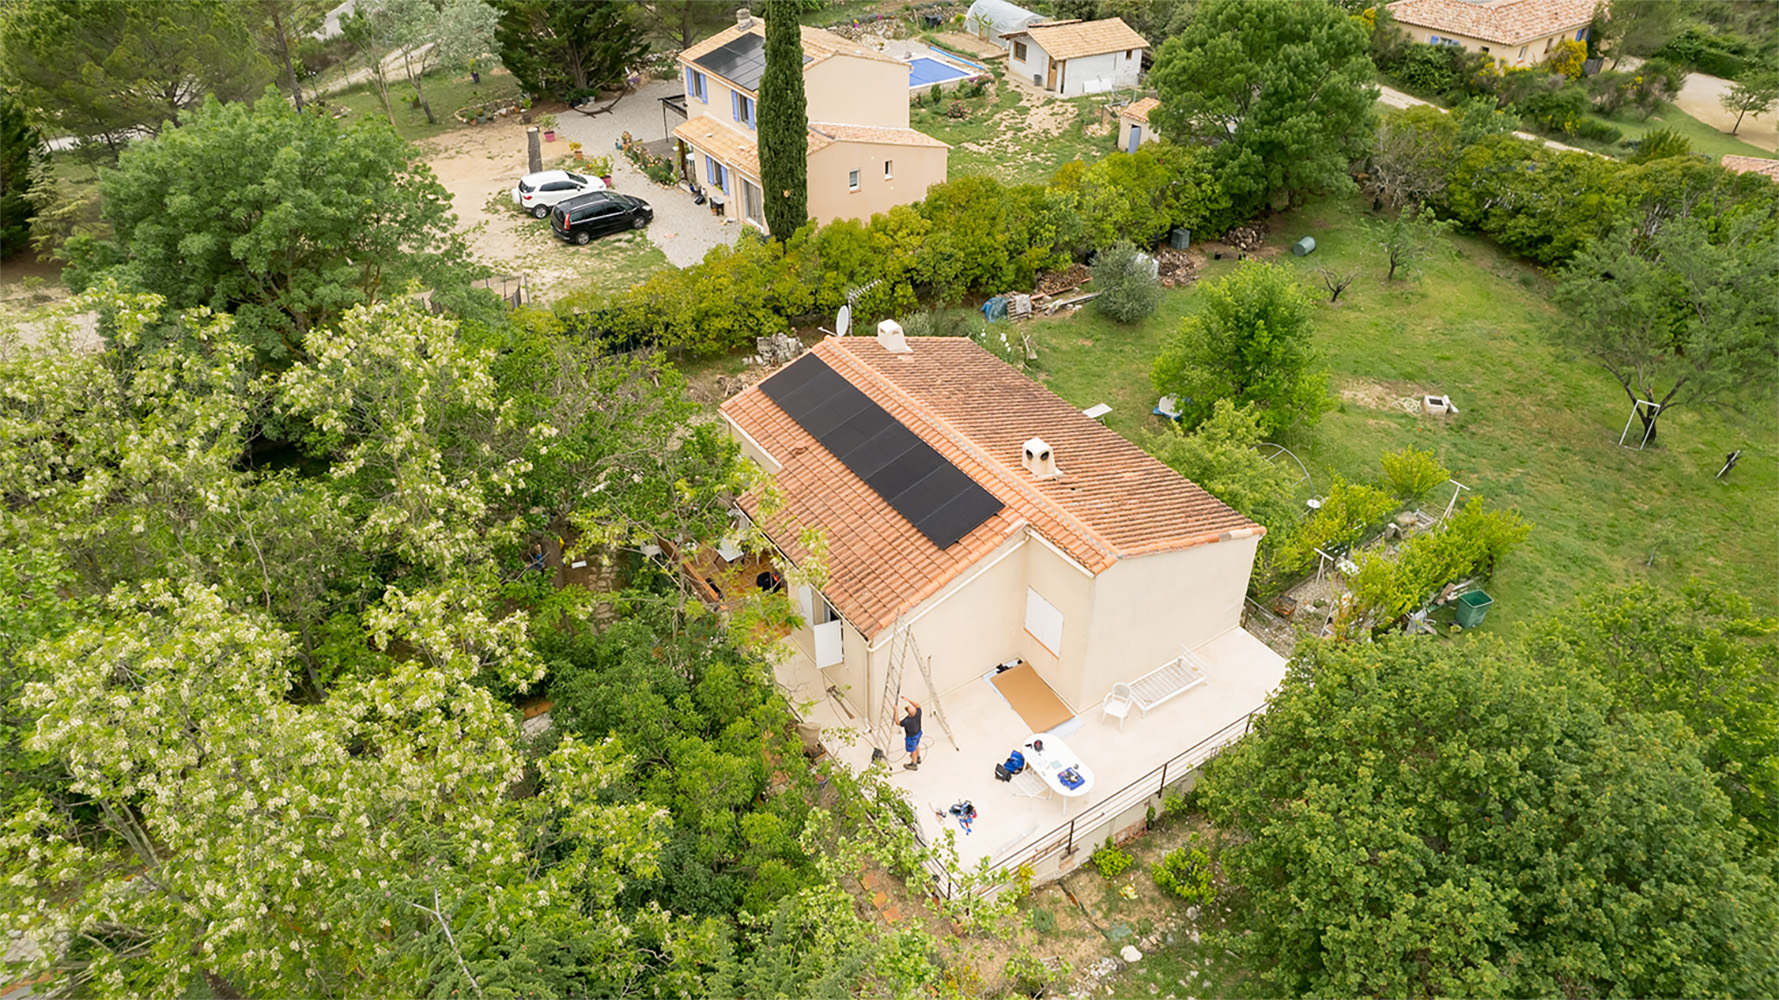 Panneaux solaires - PV - La Verdière - drone - après_2